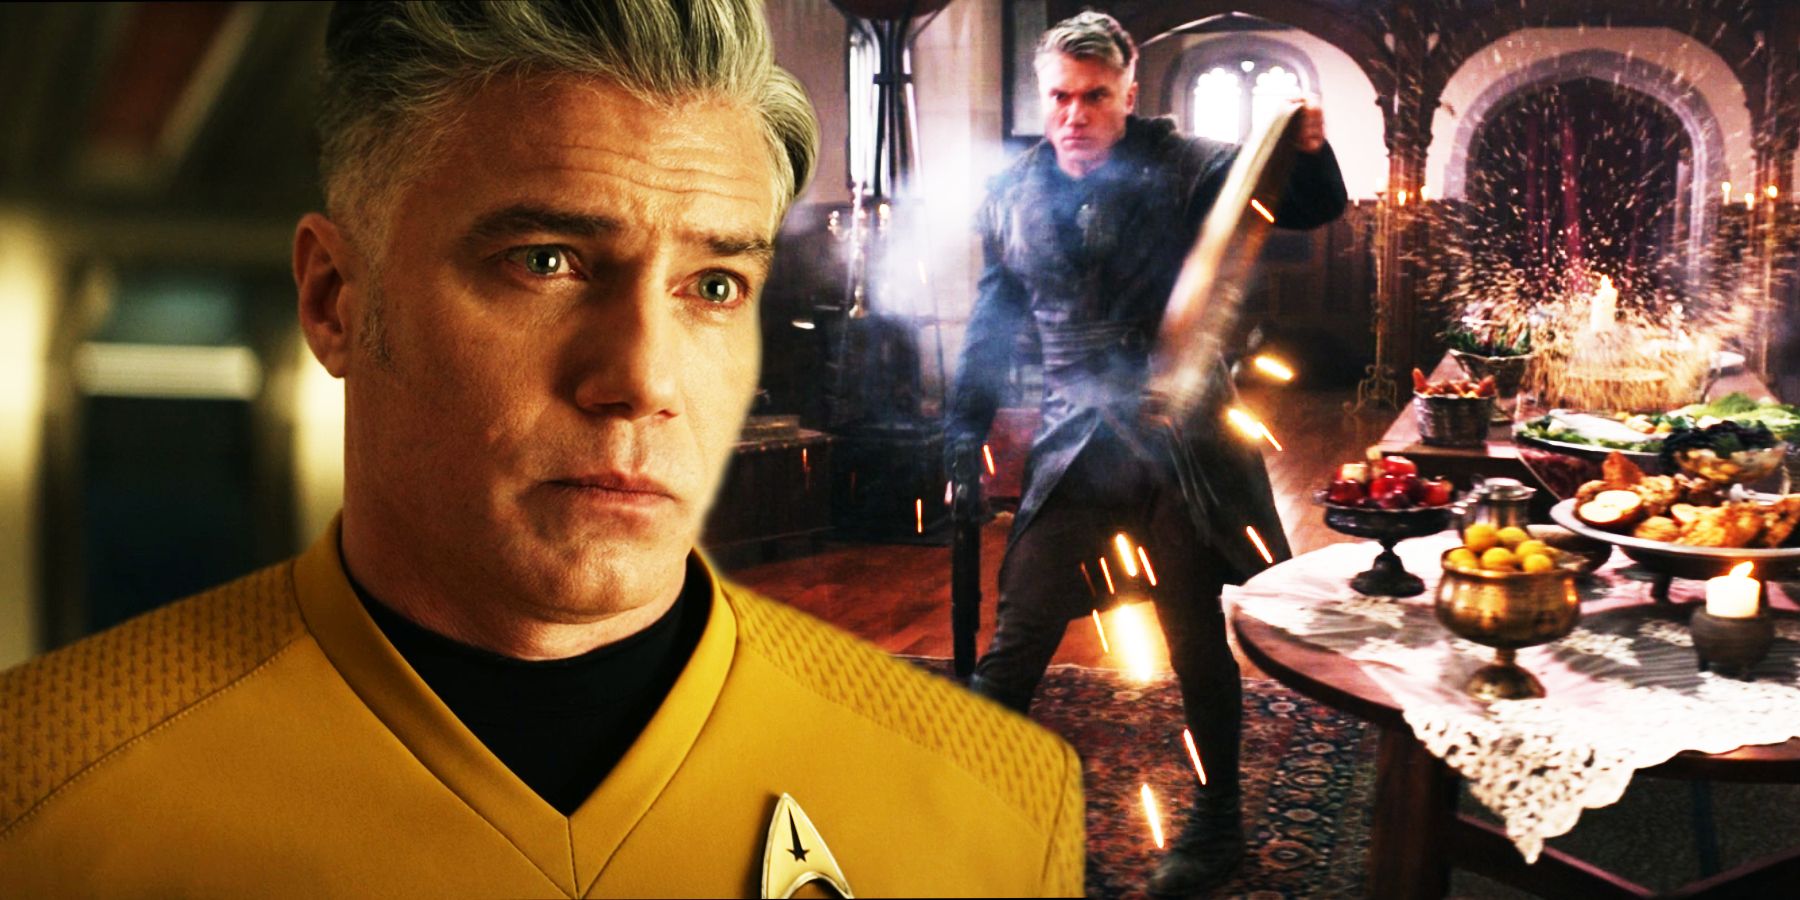 Anson Mount as Captain Pike in Star Trek: Strange New Worlds season 2, episode 4